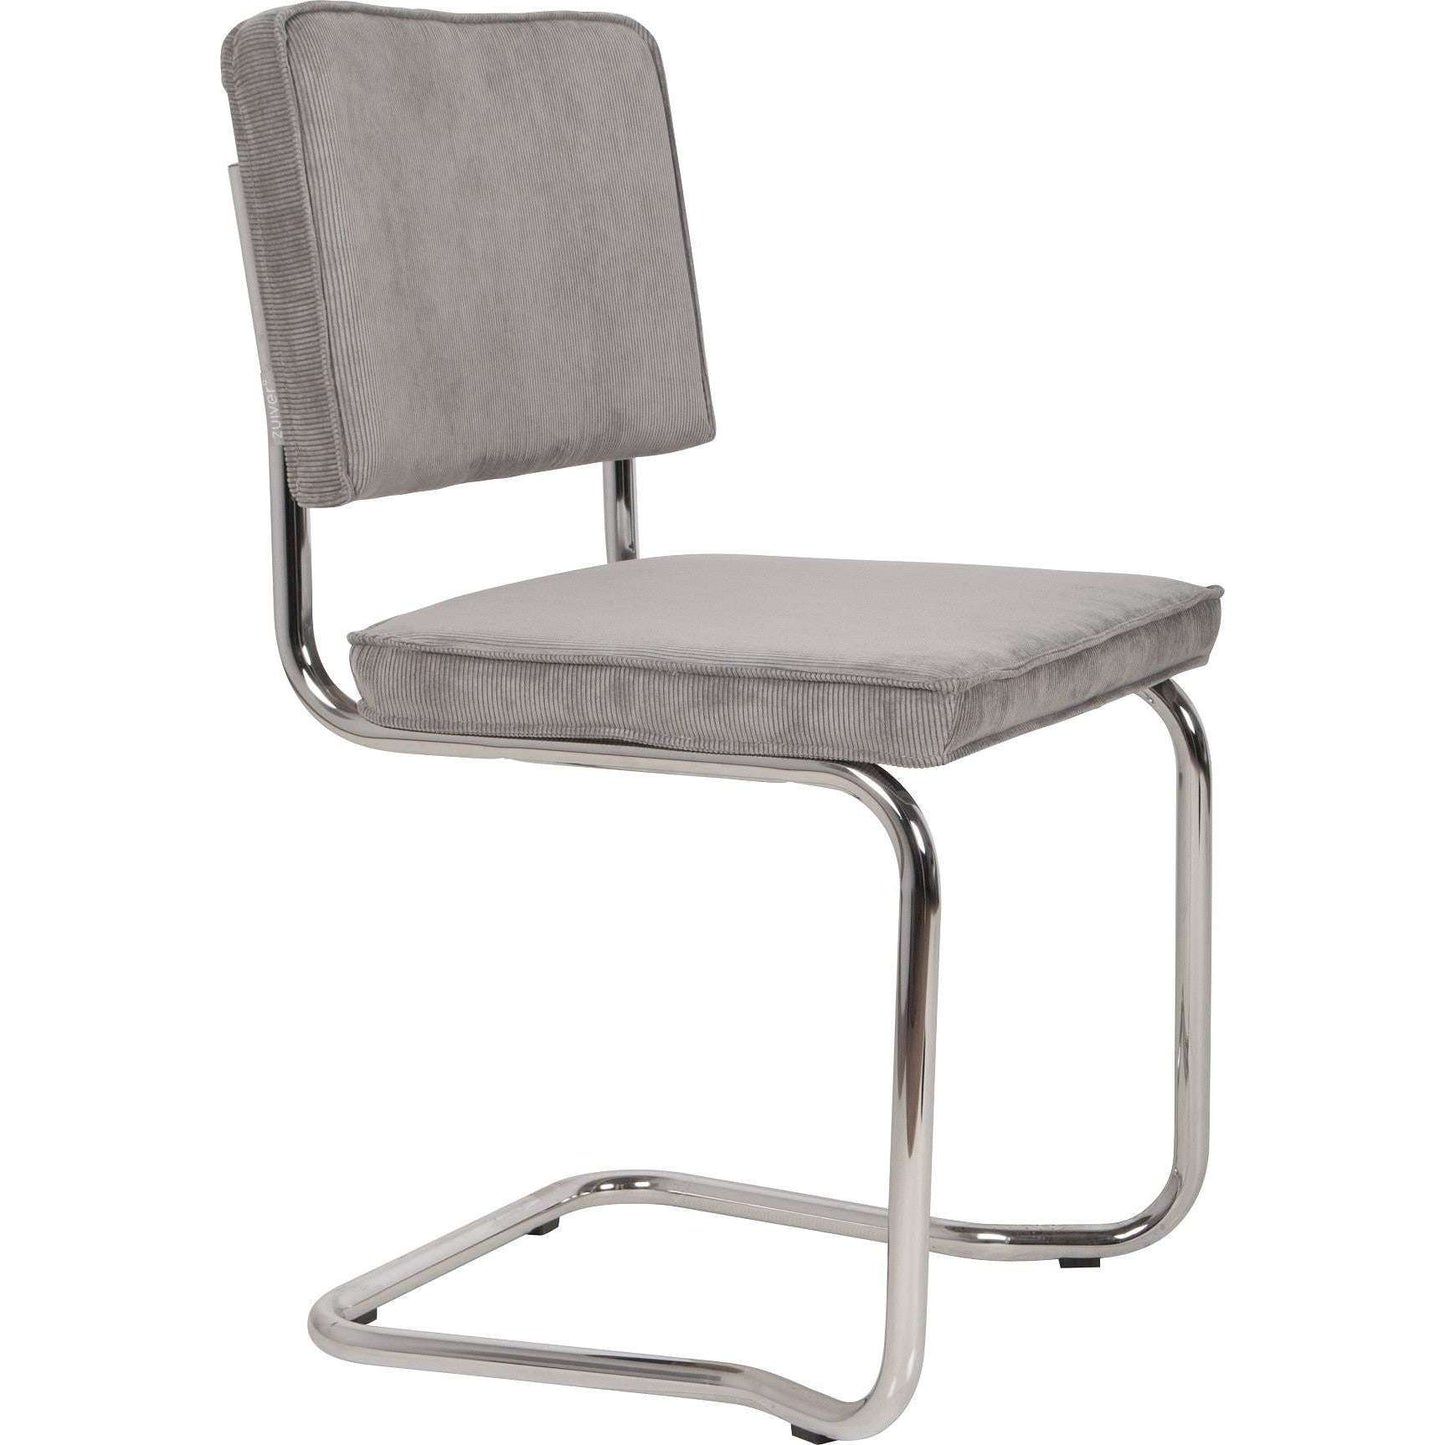 Zuiver stoel ridge kink rib cool grijs 50 x 48 x 85 cm